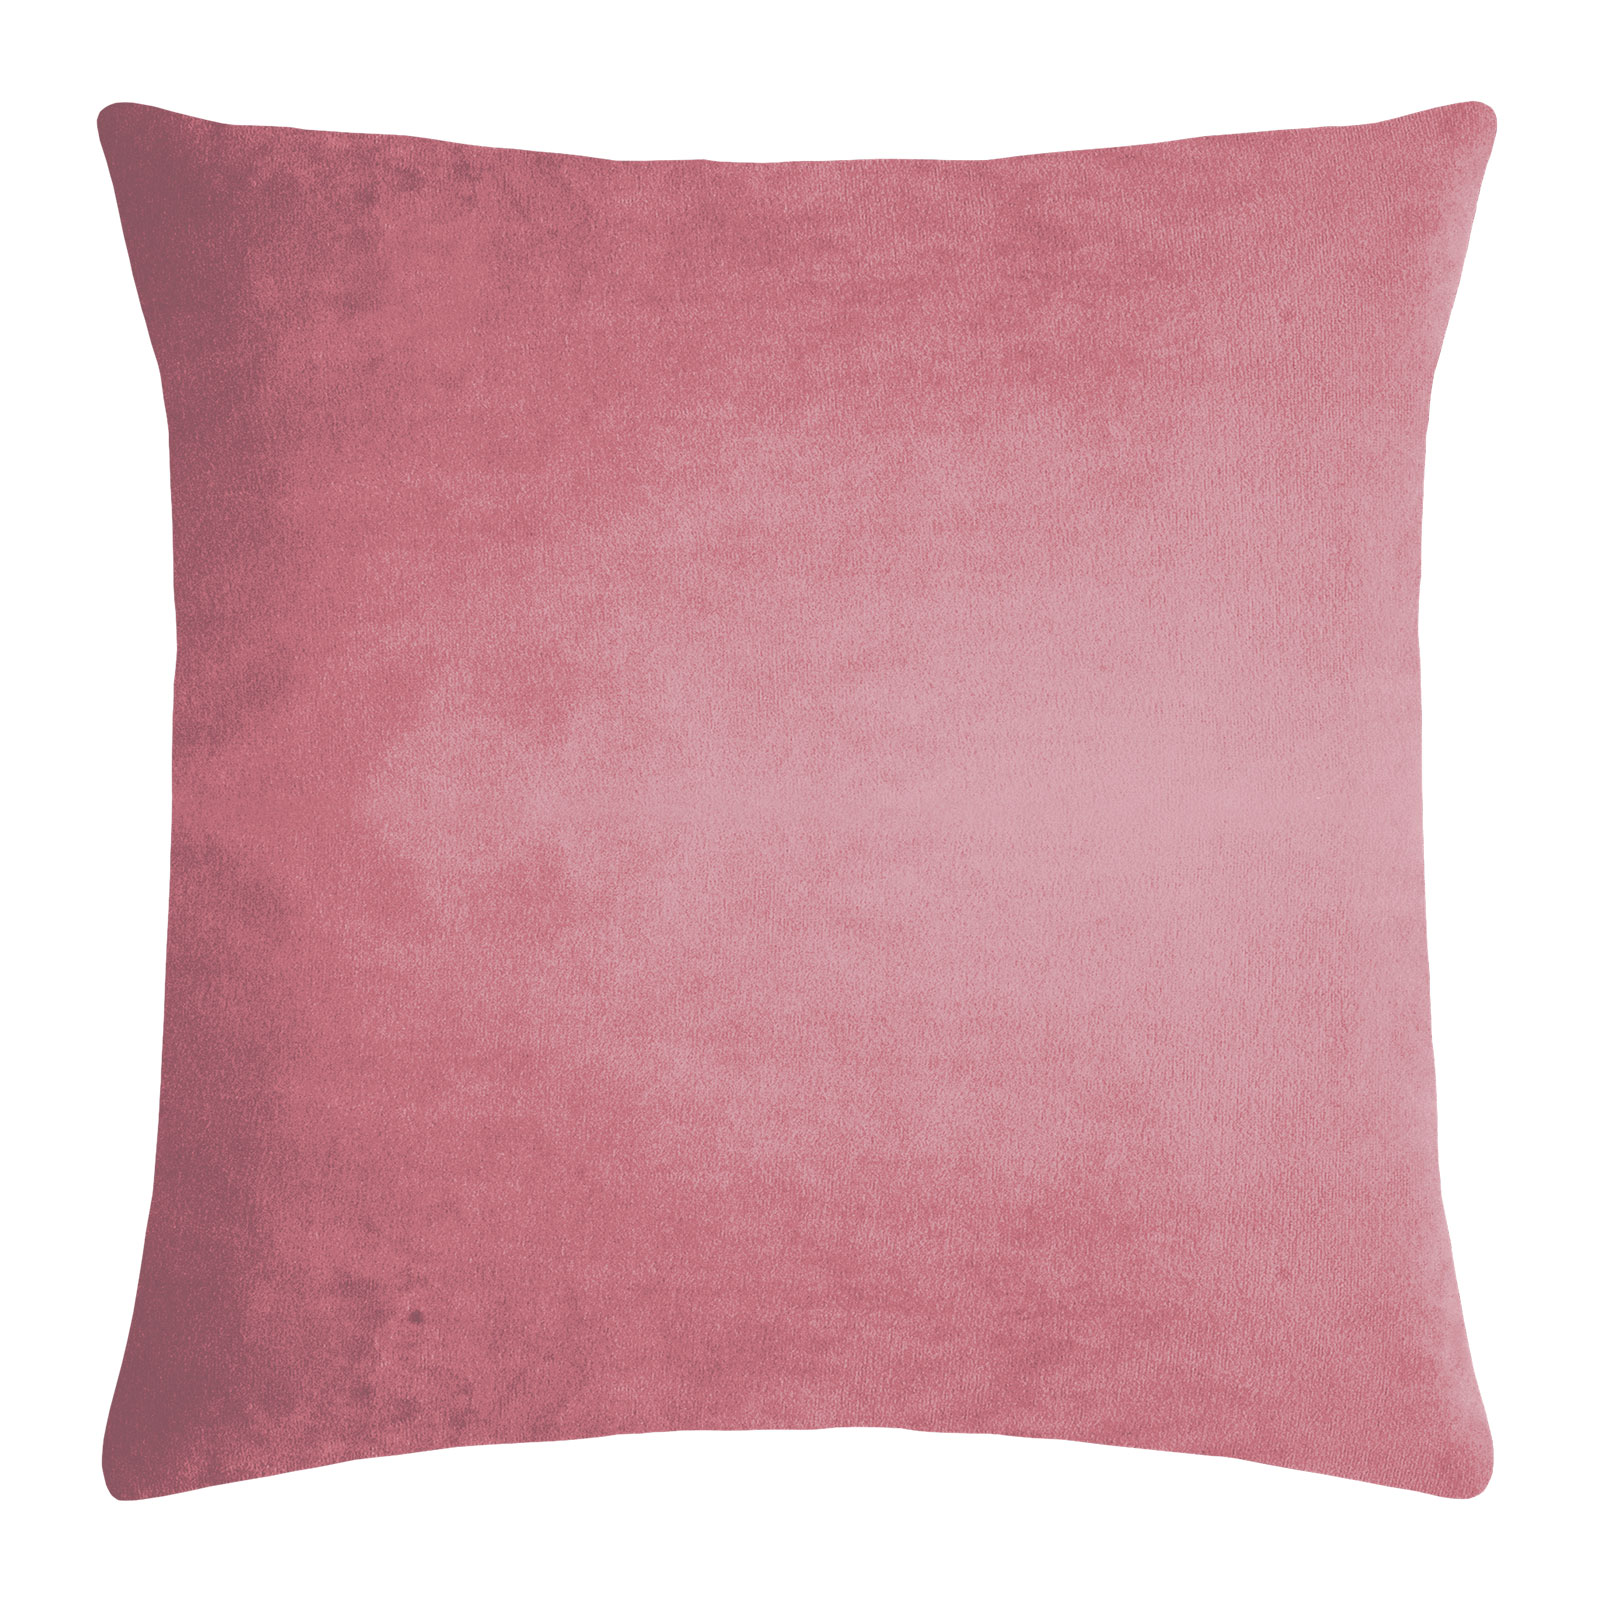 Pad Design Elegance Kissen mit Füllung 50,0x50,0cm pink